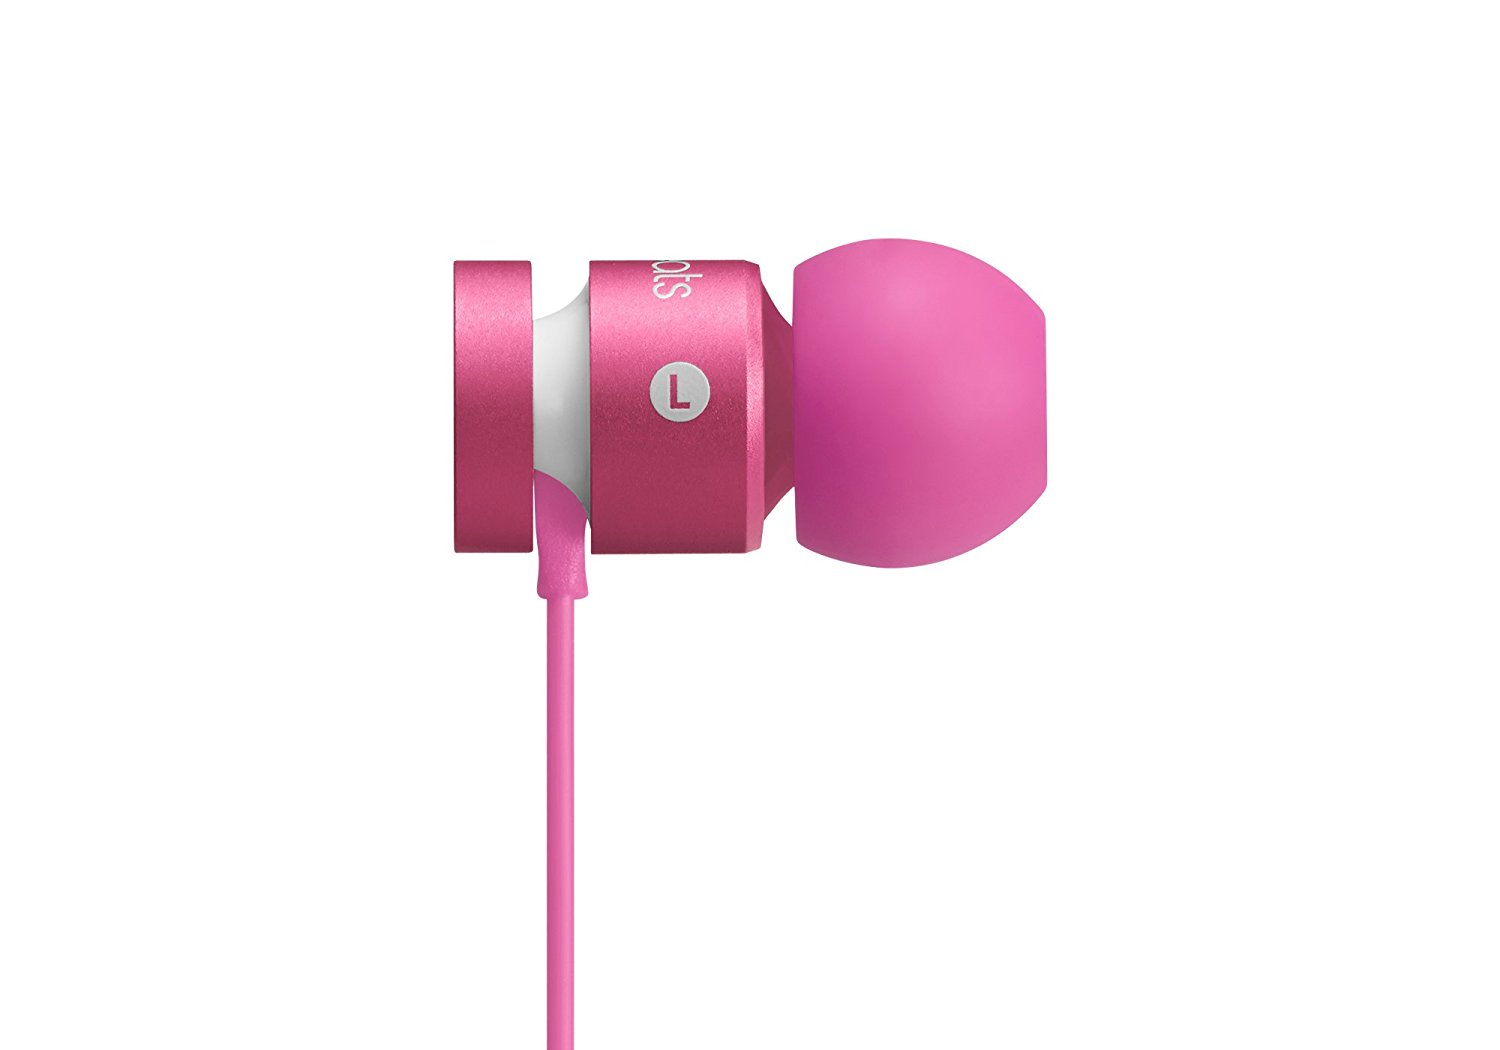 neon pink beats earbuds